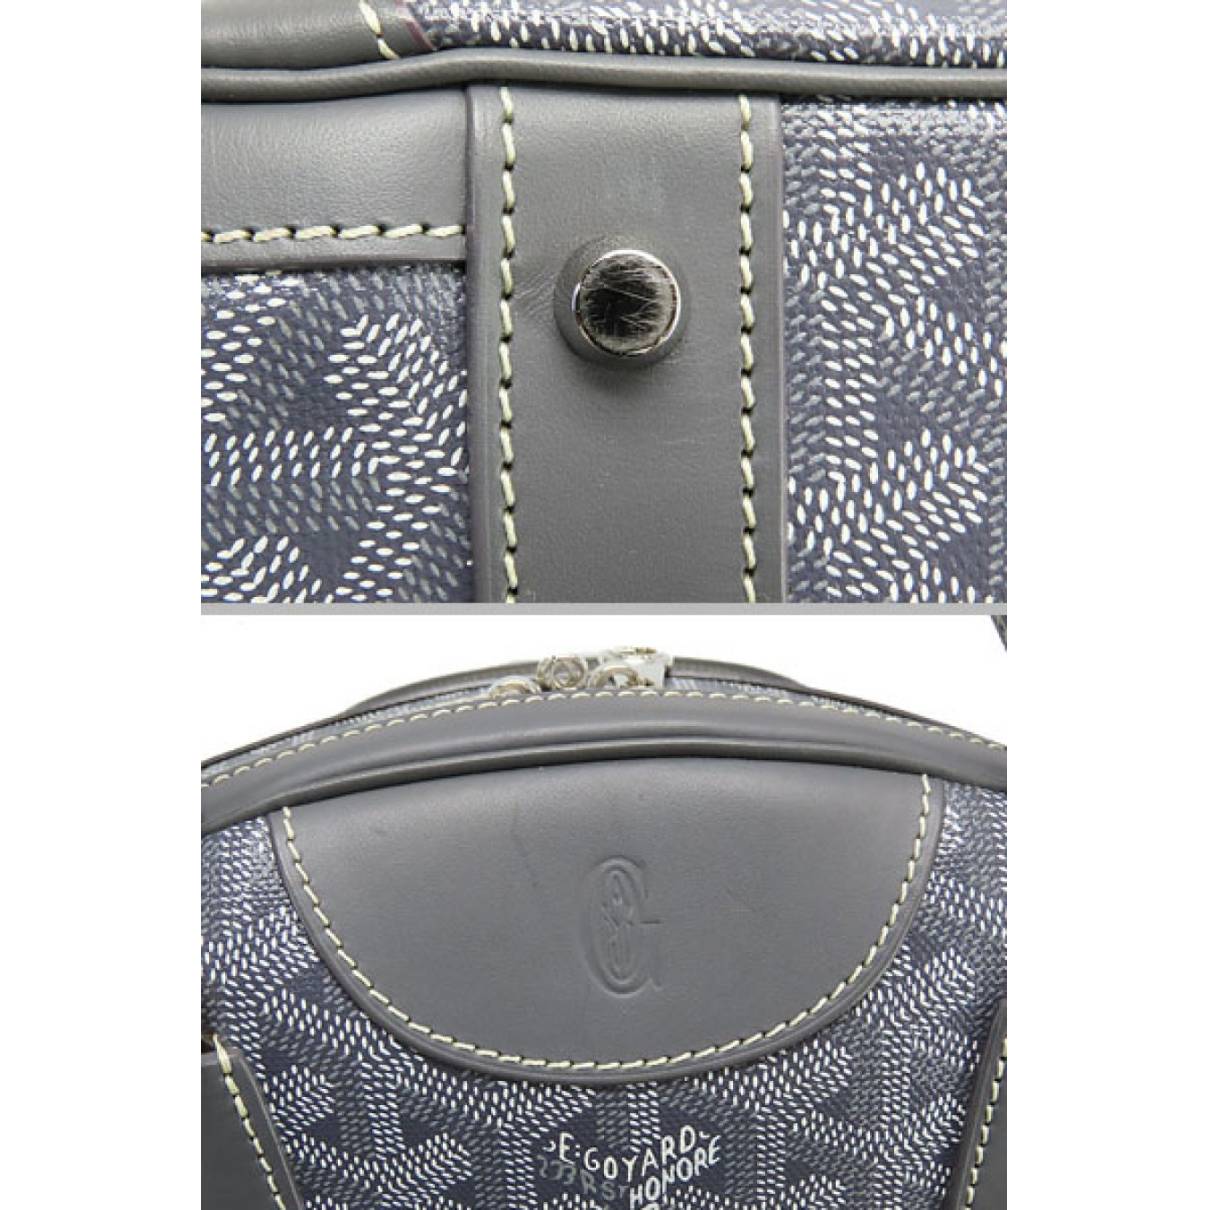 Goyard Crossbody Bag in Grey, Women's Fashion, Bags & Wallets